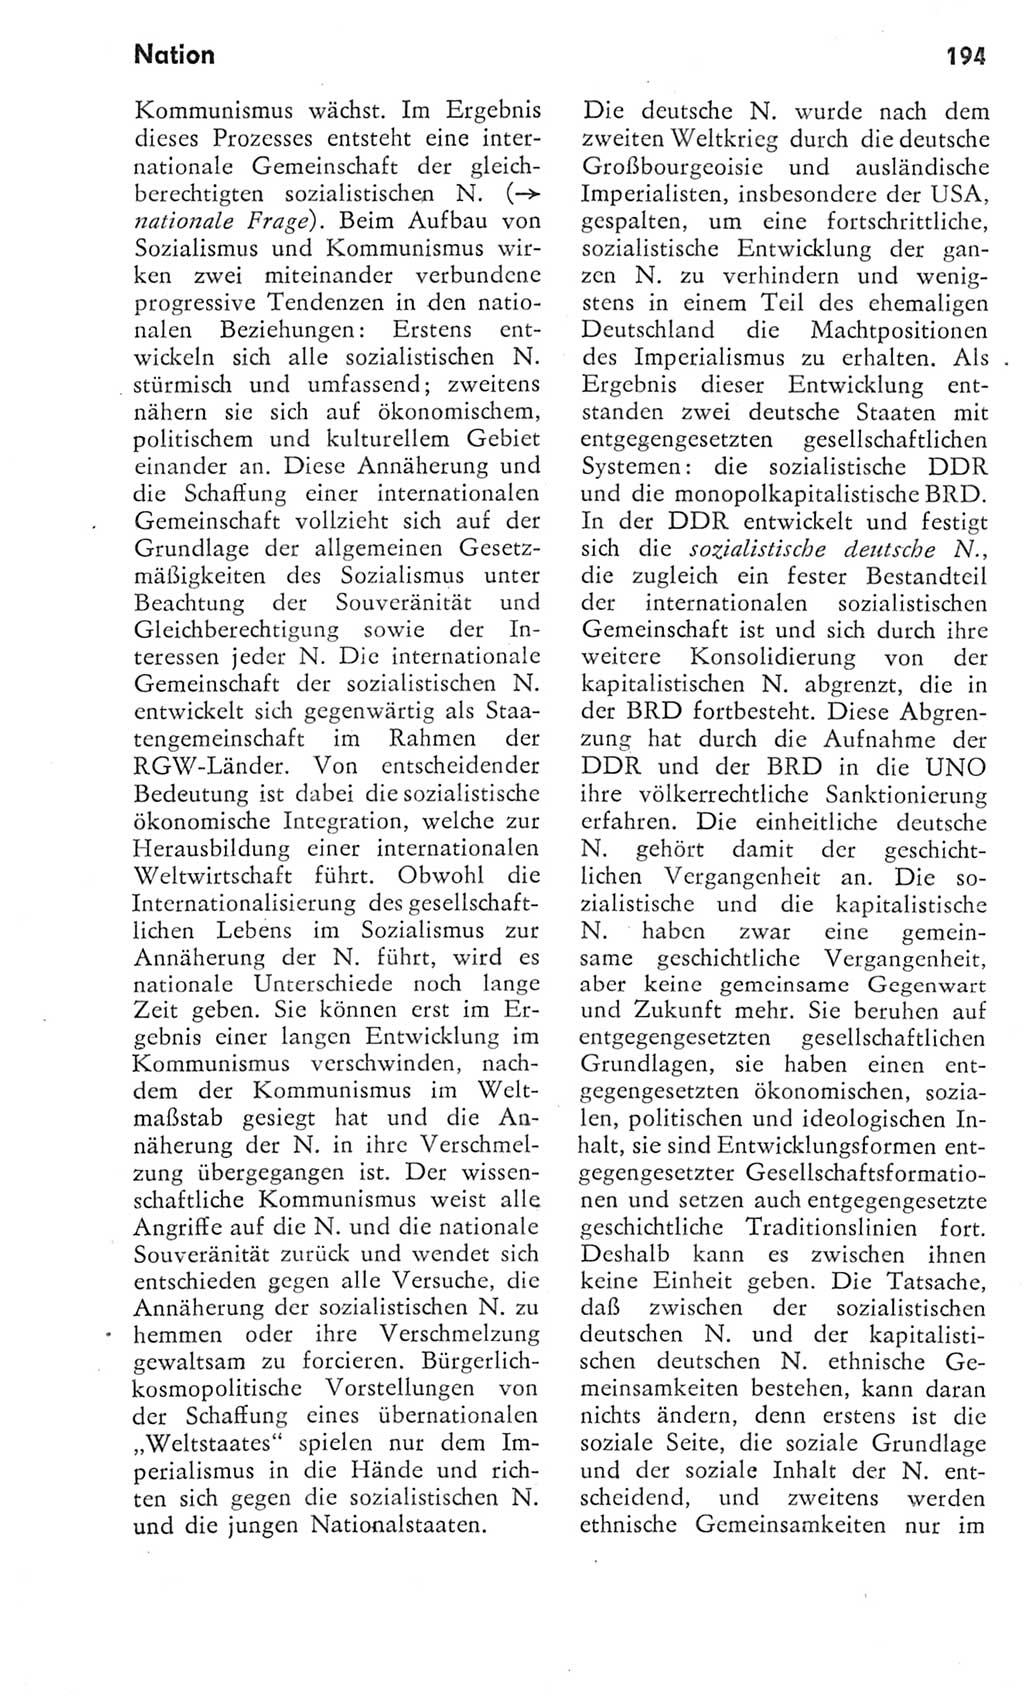 Kleines Wörterbuch der marxistisch-leninistischen Philosophie [Deutsche Demokratische Republik (DDR)] 1975, Seite 194 (Kl. Wb. ML Phil. DDR 1975, S. 194)